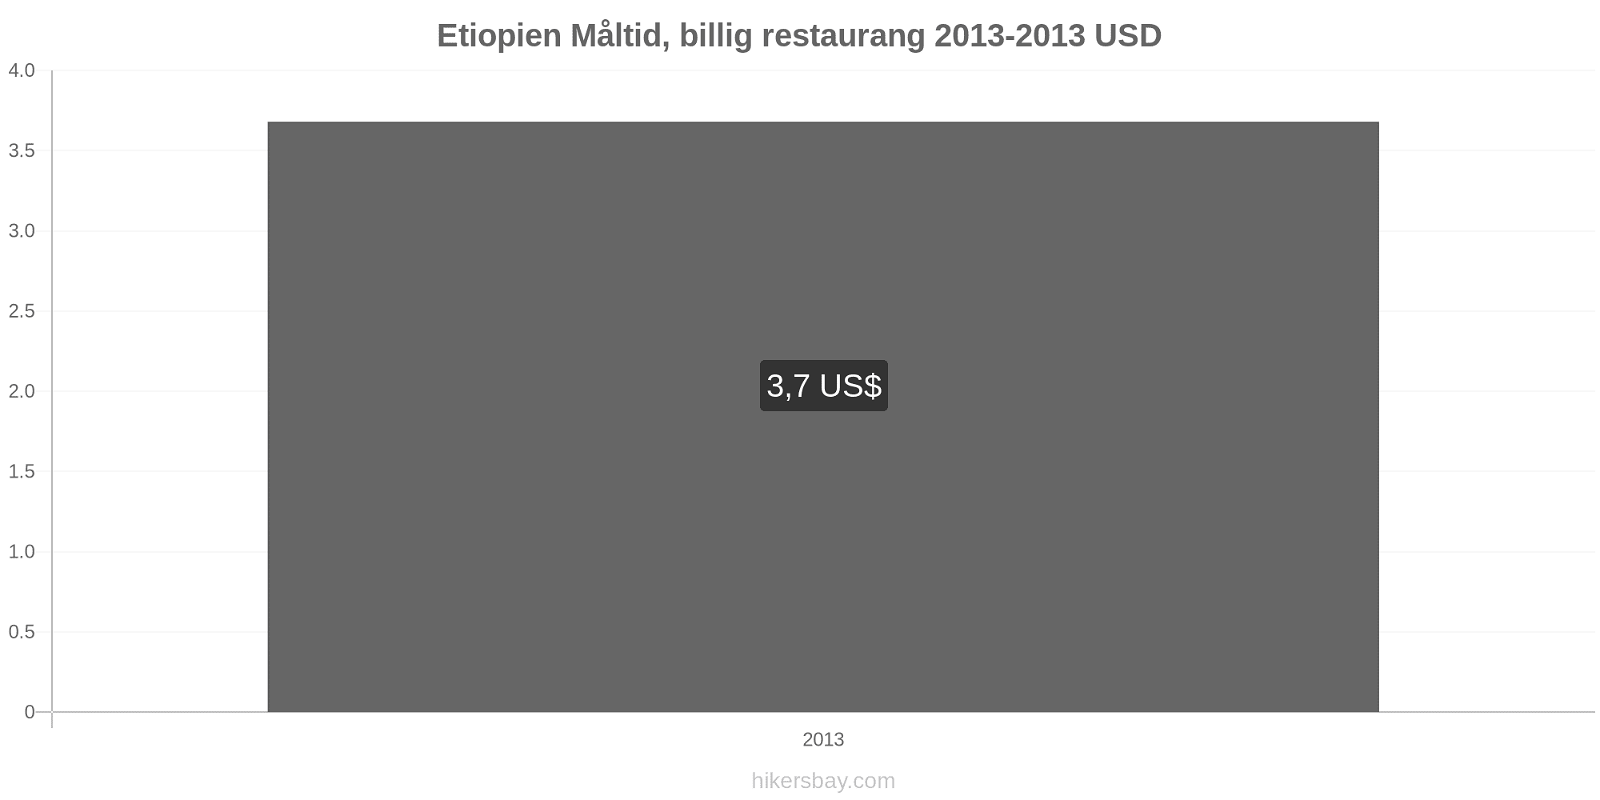 Etiopien prisändringar Måltid i en billig restaurang hikersbay.com